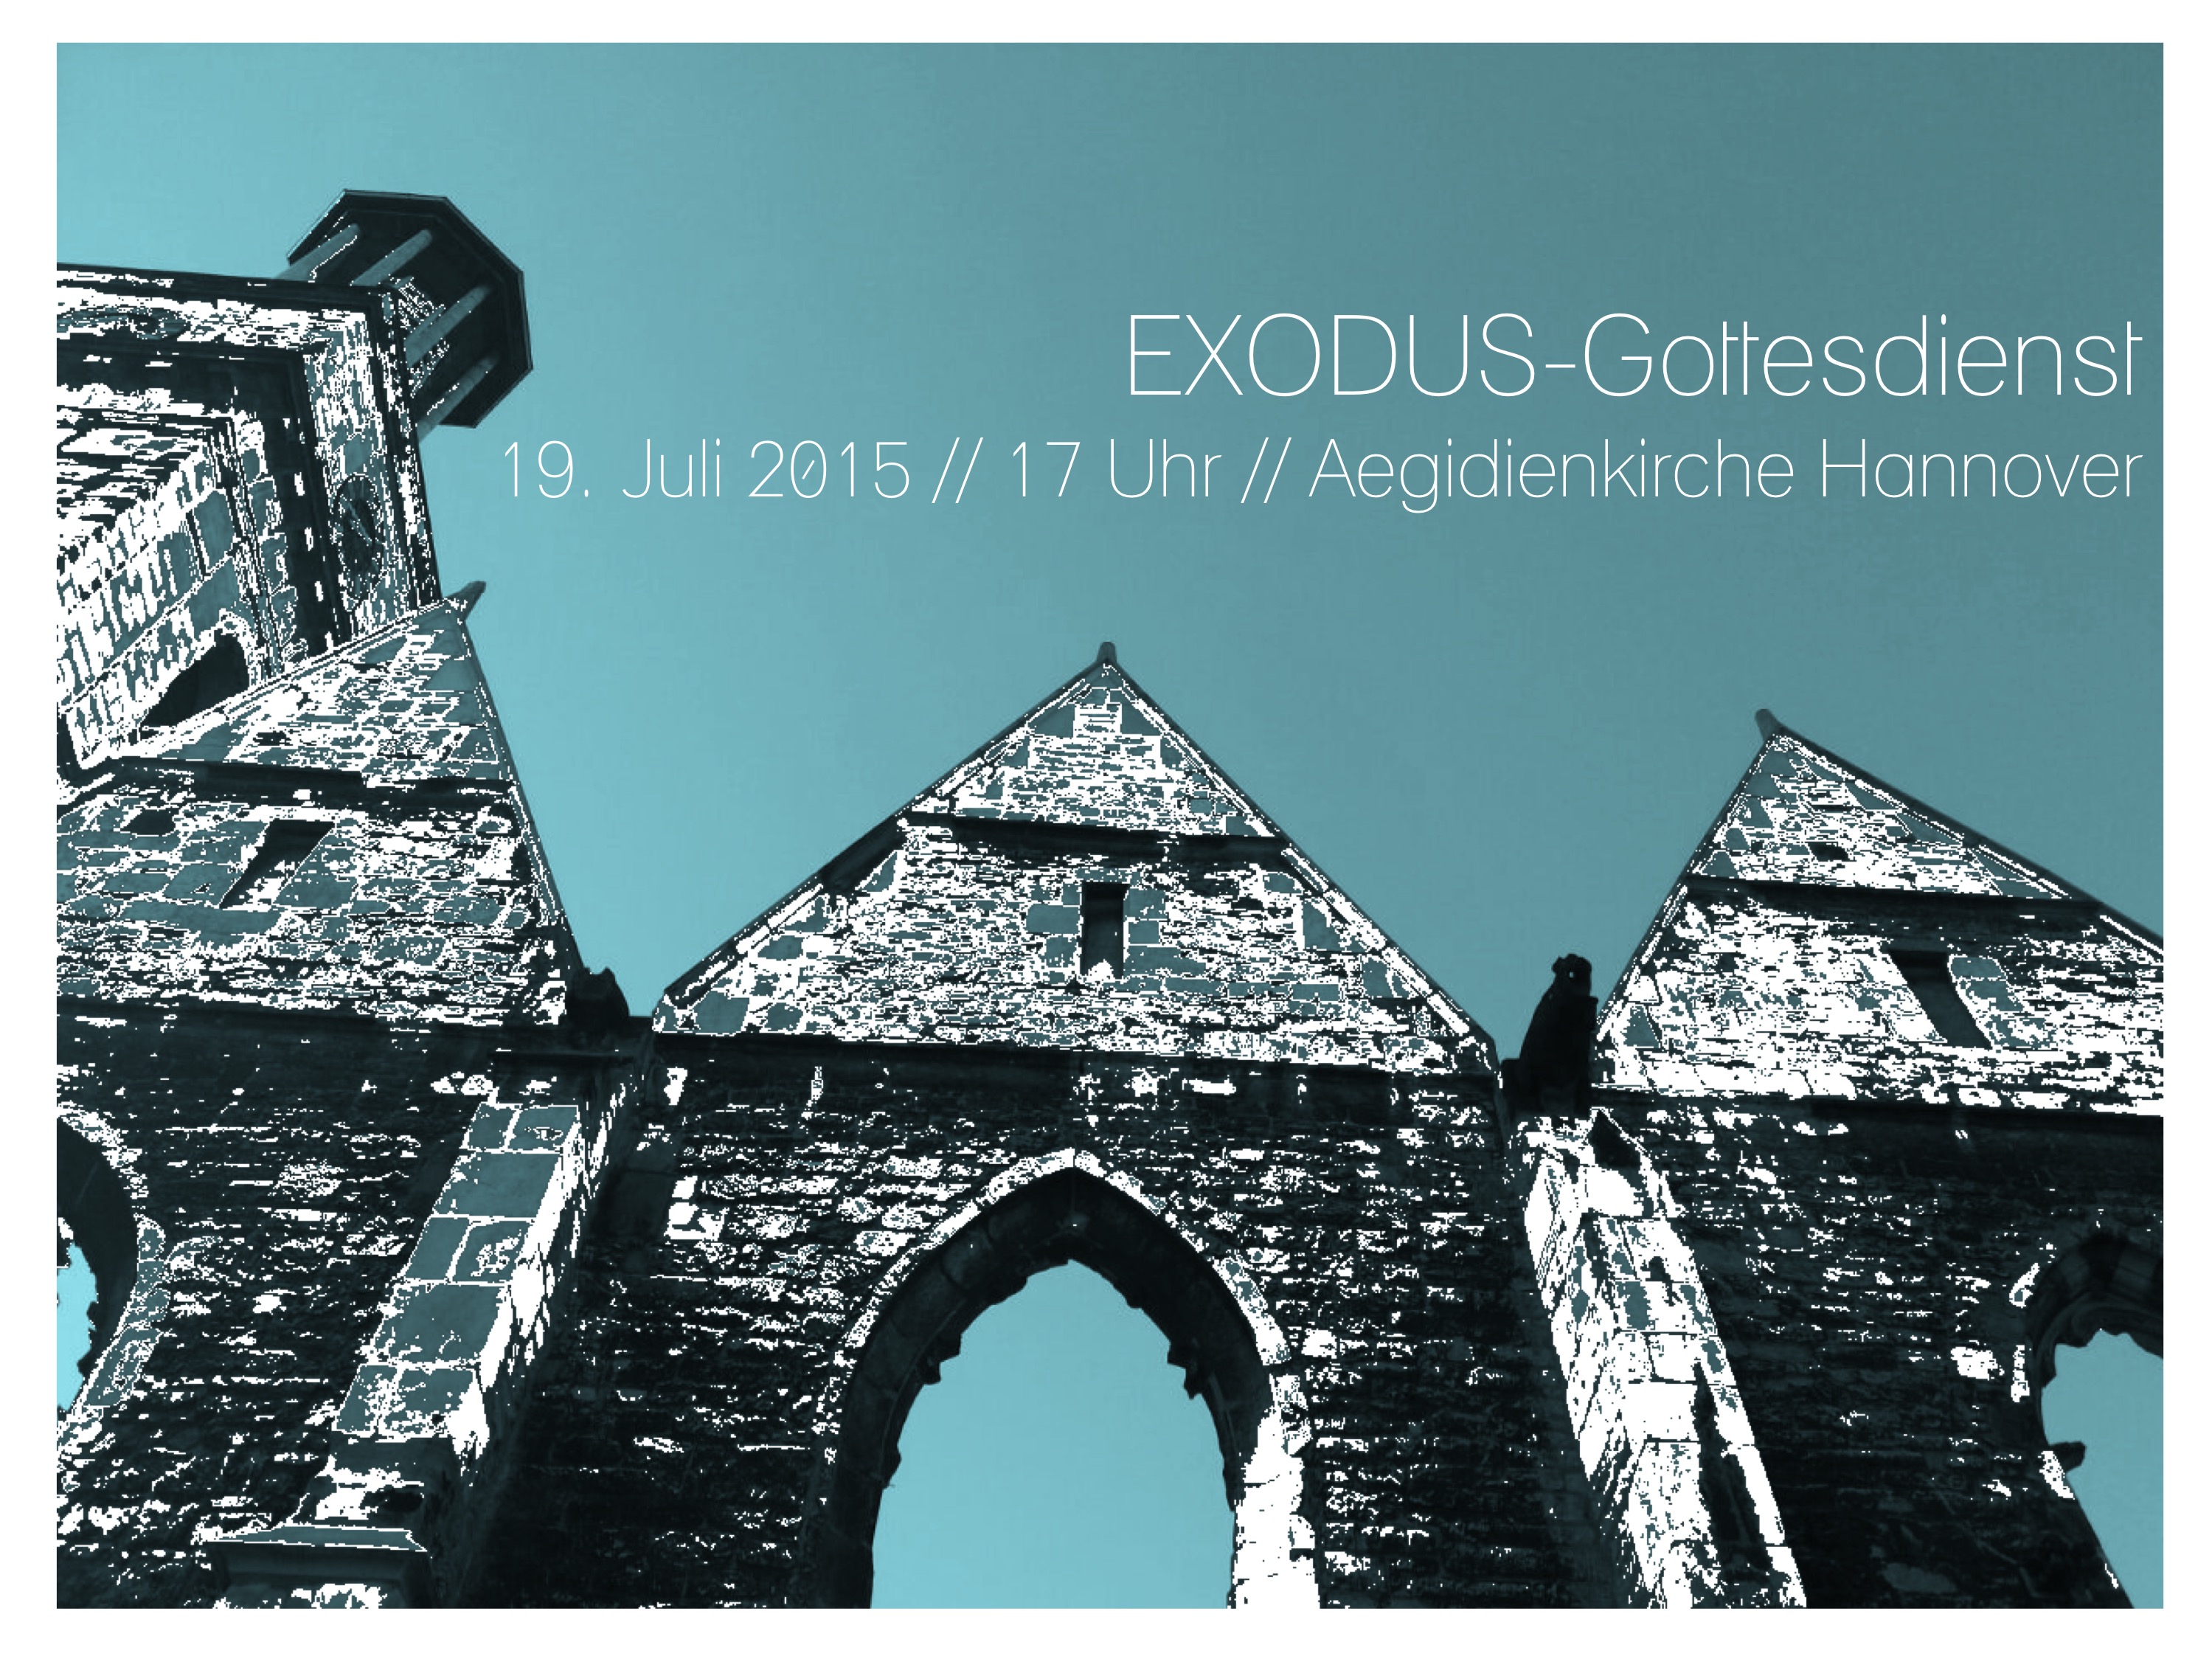 Exodus-Gottesdienst in der Aegidienkirche